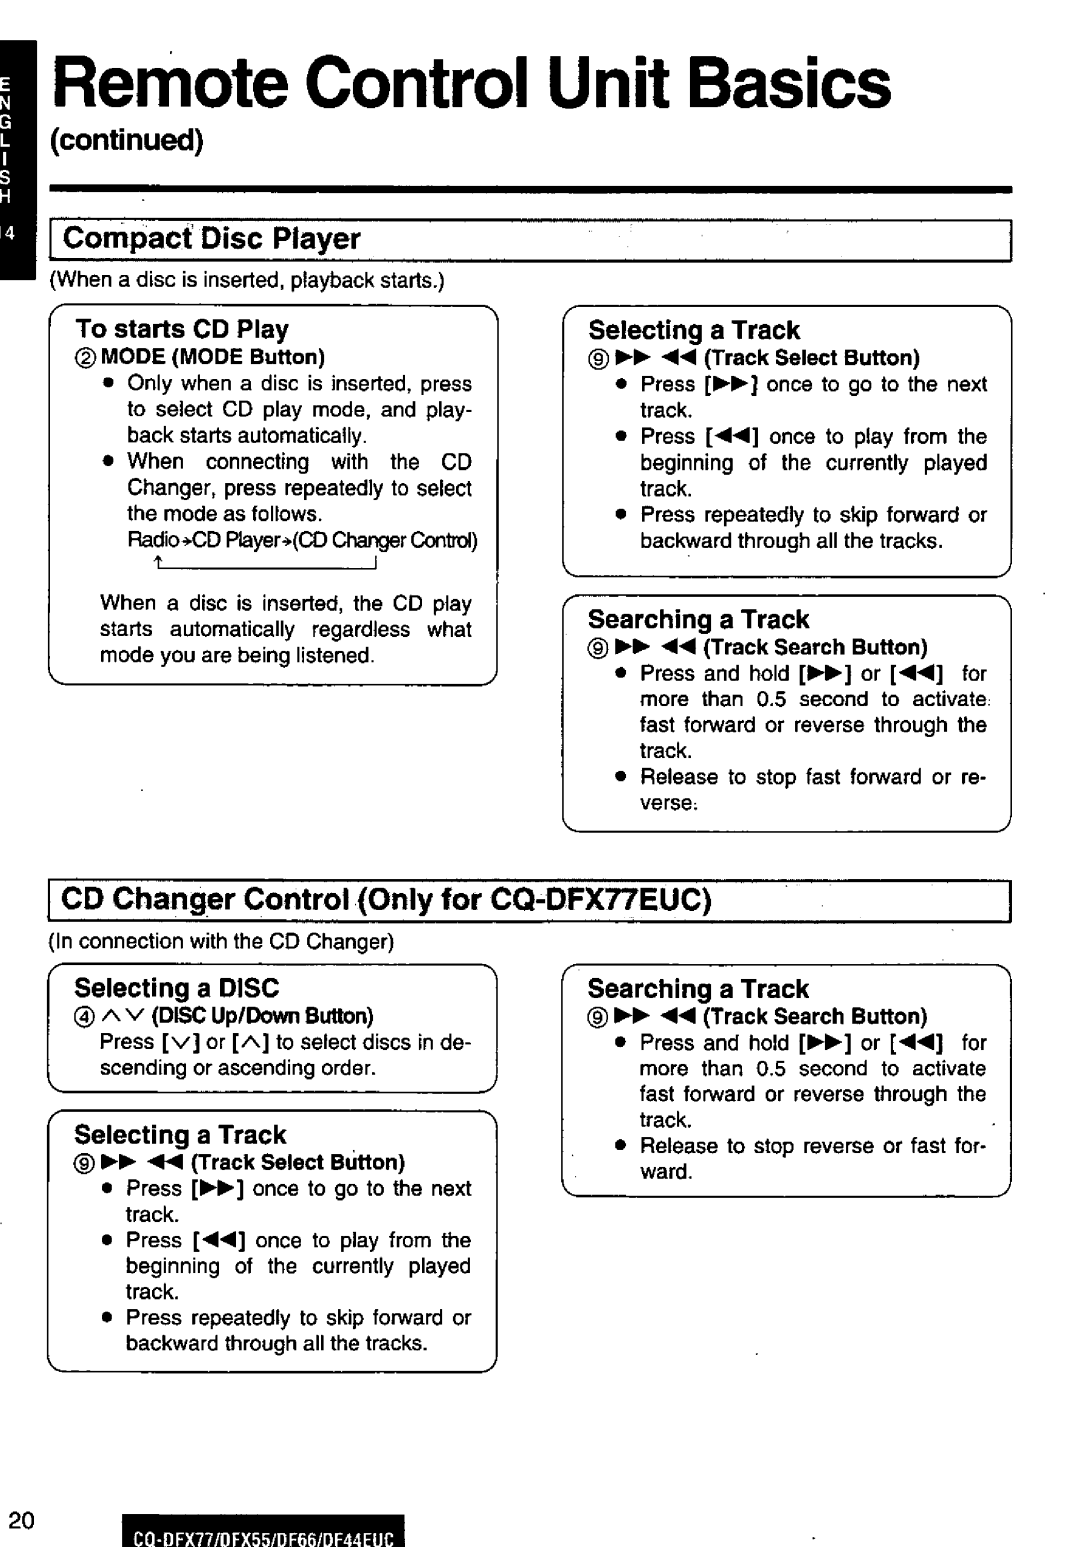 Panasonic CQ-DFX77, DF66EUC, DF44EUC, CQ-DFX55 manual 